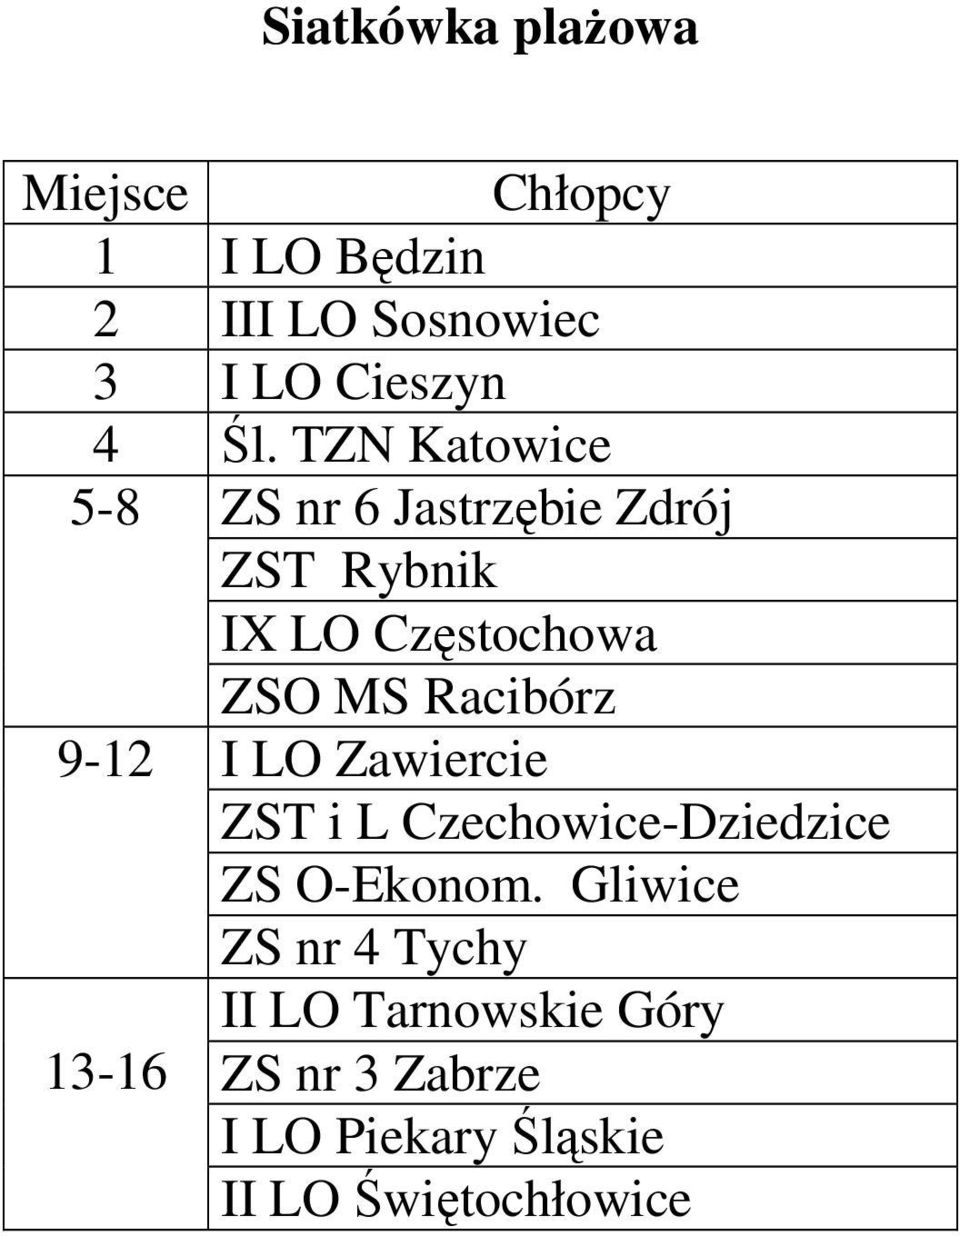 Racibórz 9-12 I LO Zawiercie ZST i L Czechowice-Dziedzice ZS O-Ekonom.